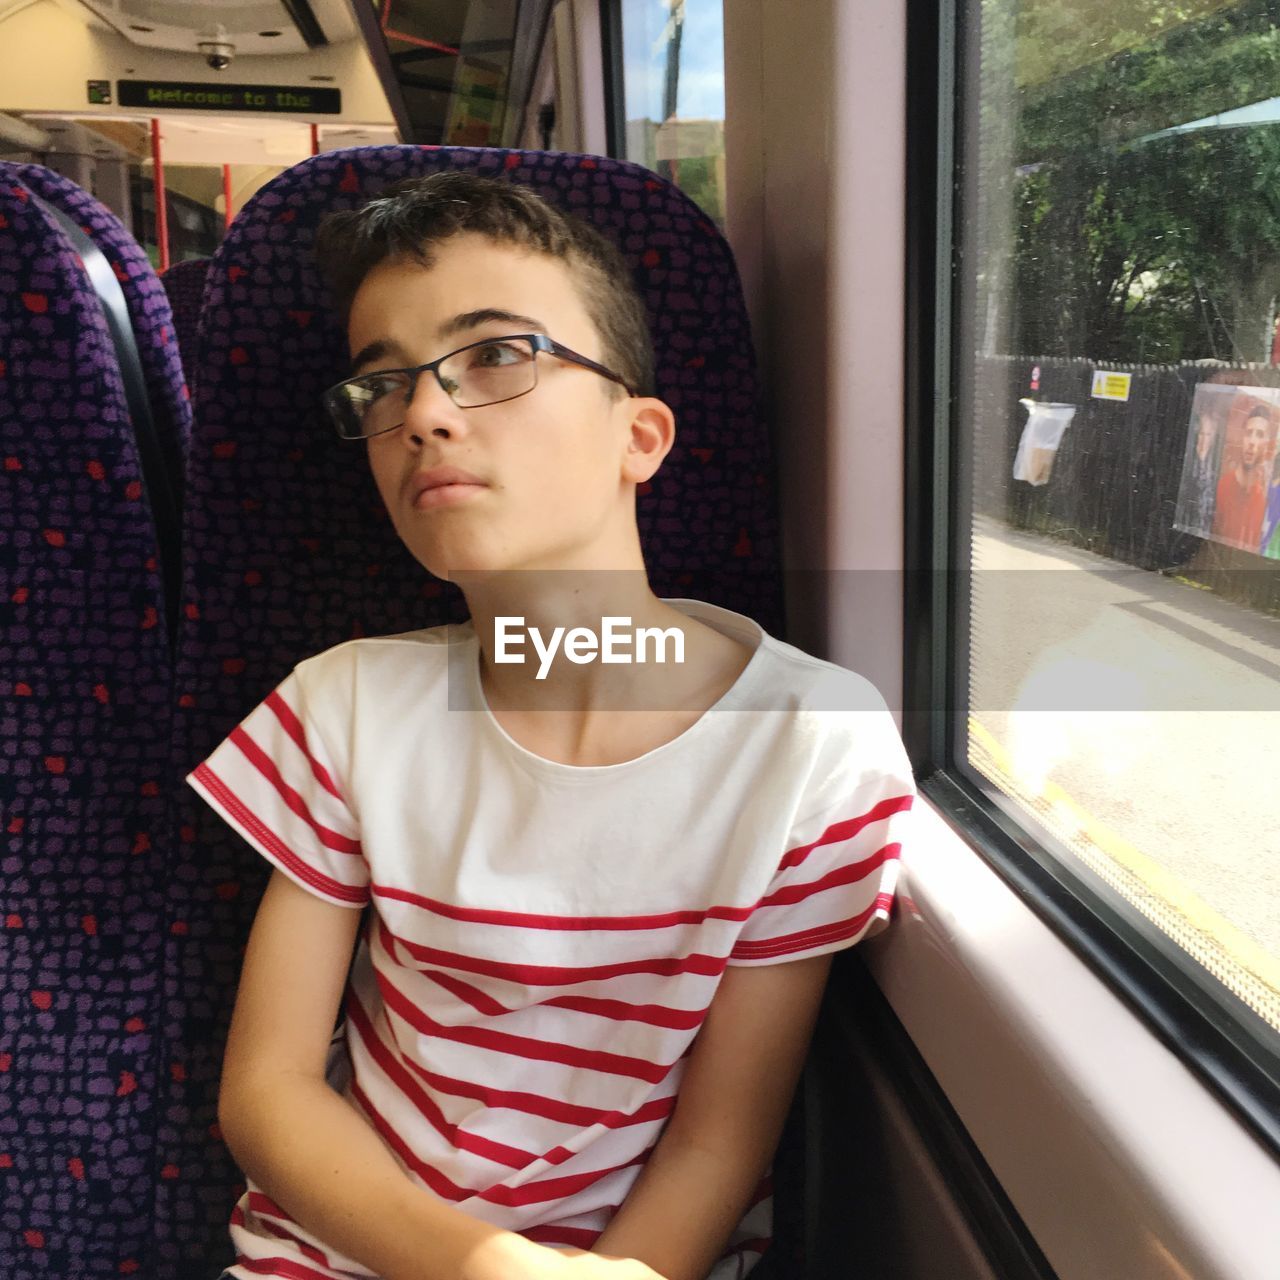 Boy sitting in train